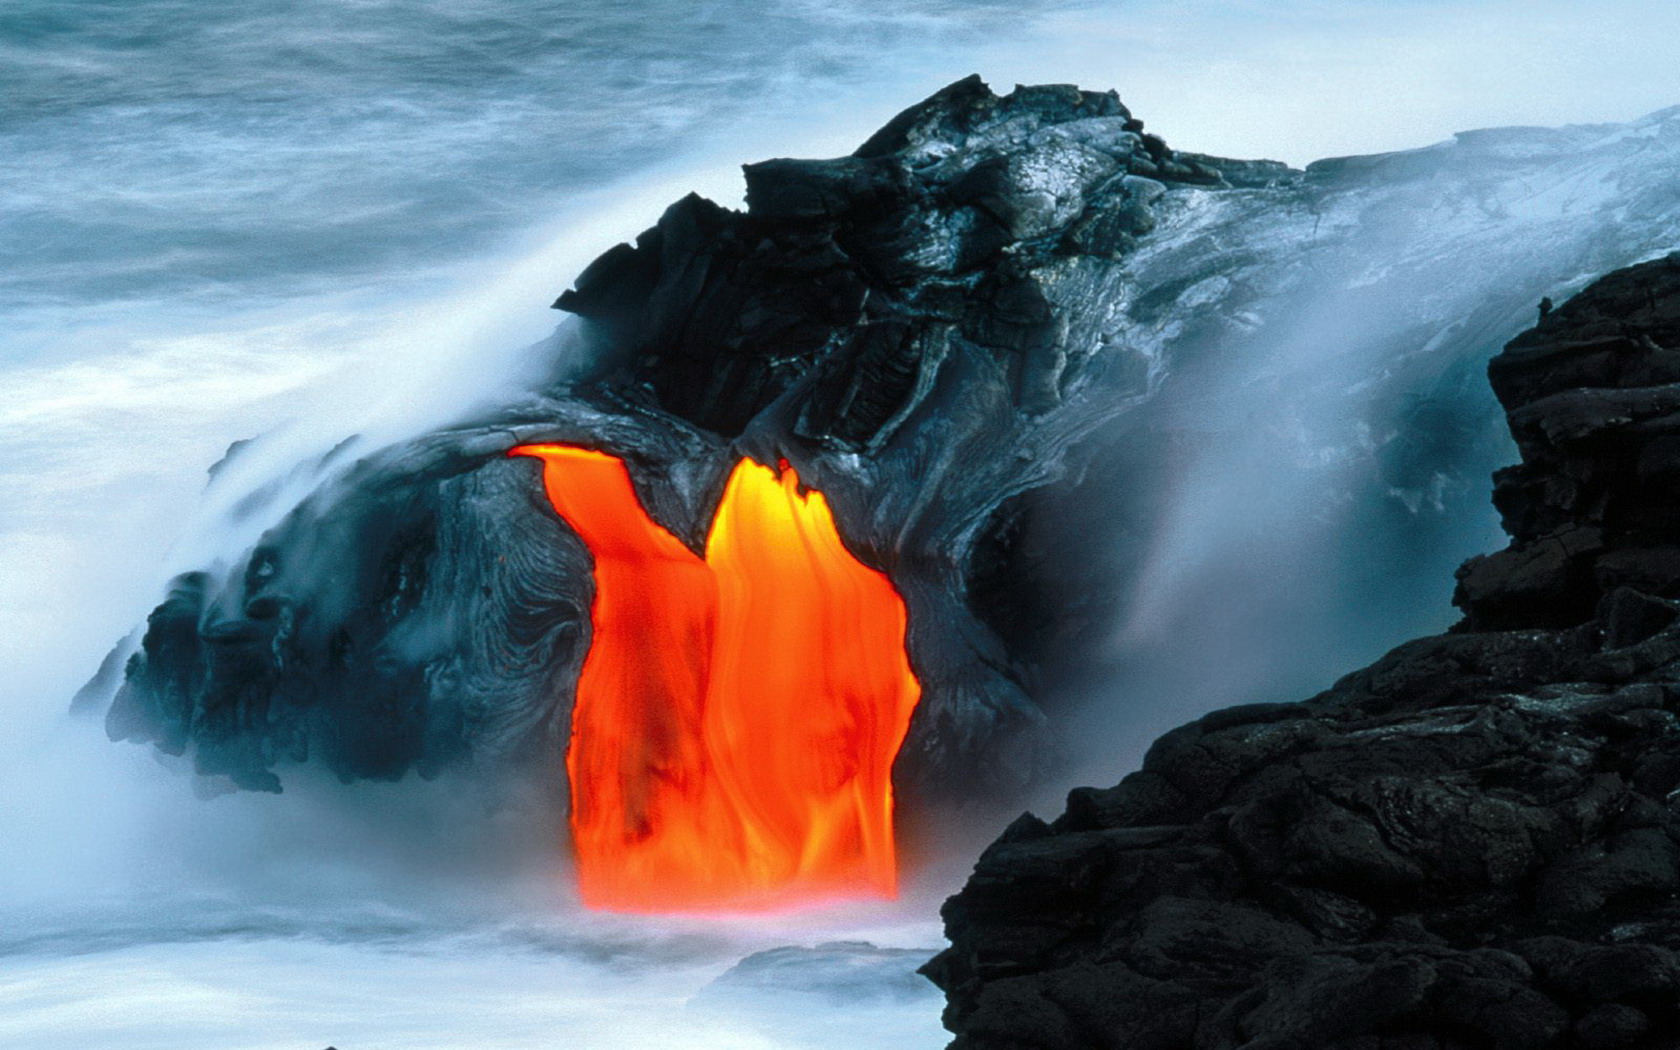 Lava Flow from Kilauea Volcano Hawaii, hình ảnh hoang sơ và đầy ma lực này sẽ khiến bạn truyền cảm hứng. Sự dữ dội của núi lửa và lớp đất trầm tích dưới đó khiến cho bức hình này trở nên đặc biệt và cực kỳ cuốn hút. Cùng đắm mình trong thế giới cháy nổ của núi lửa trên đỉnh Kilauea.